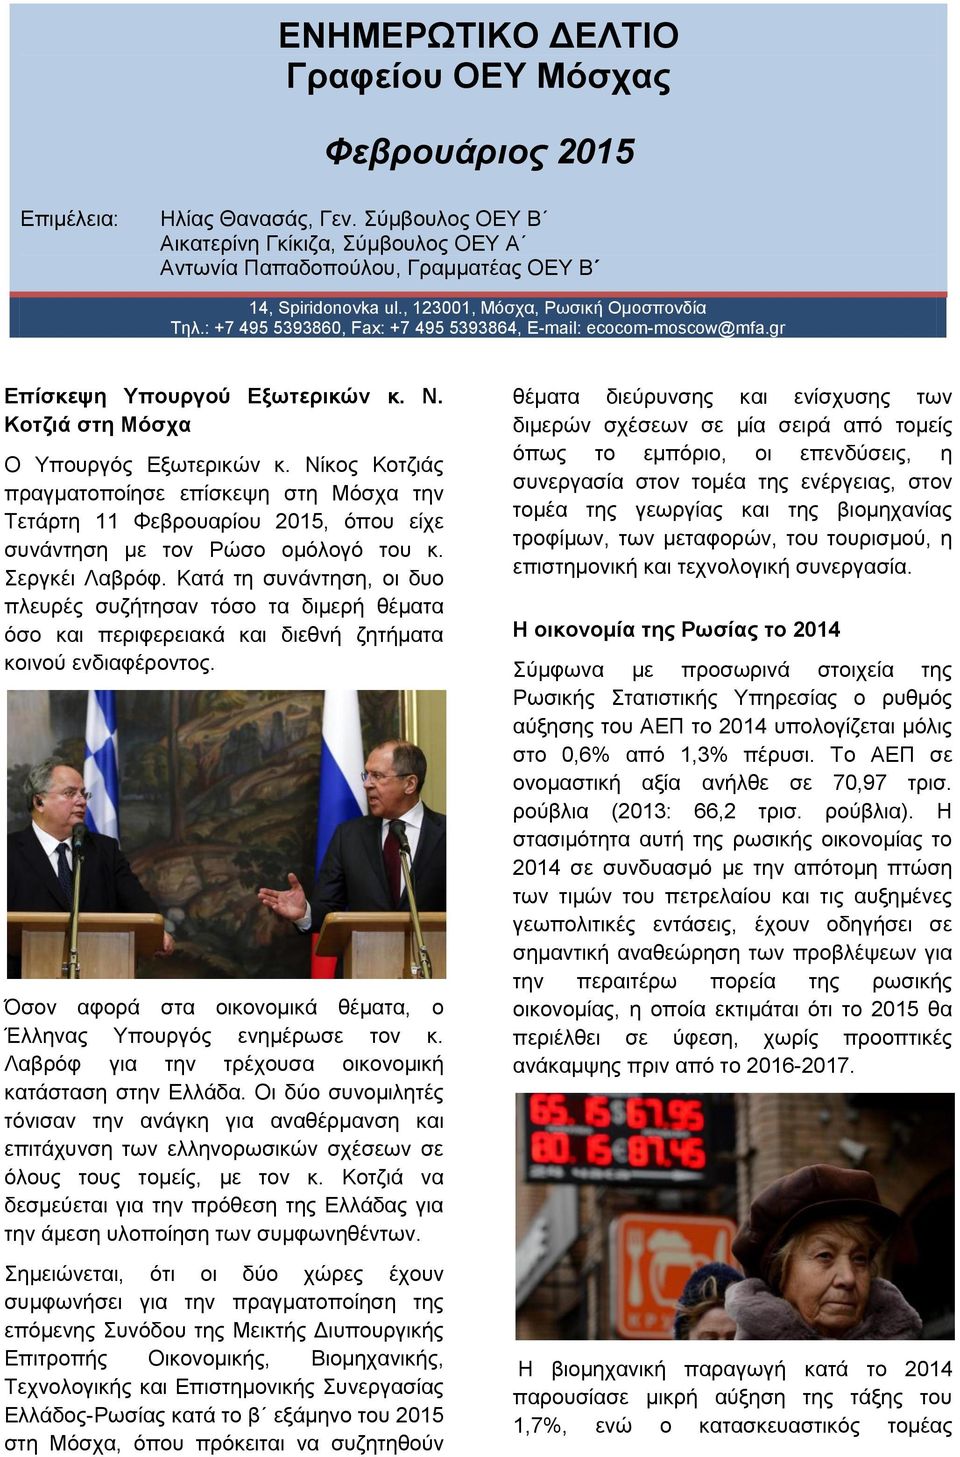 Νίκος Κοτζιάς πραγματοποίησε επίσκεψη στη Μόσχα την Τετάρτη 11 Φεβρουαρίου 2015, όπου είχε συνάντηση με τον Ρώσο ομόλογό του κ. Σεργκέι Λαβρόφ.